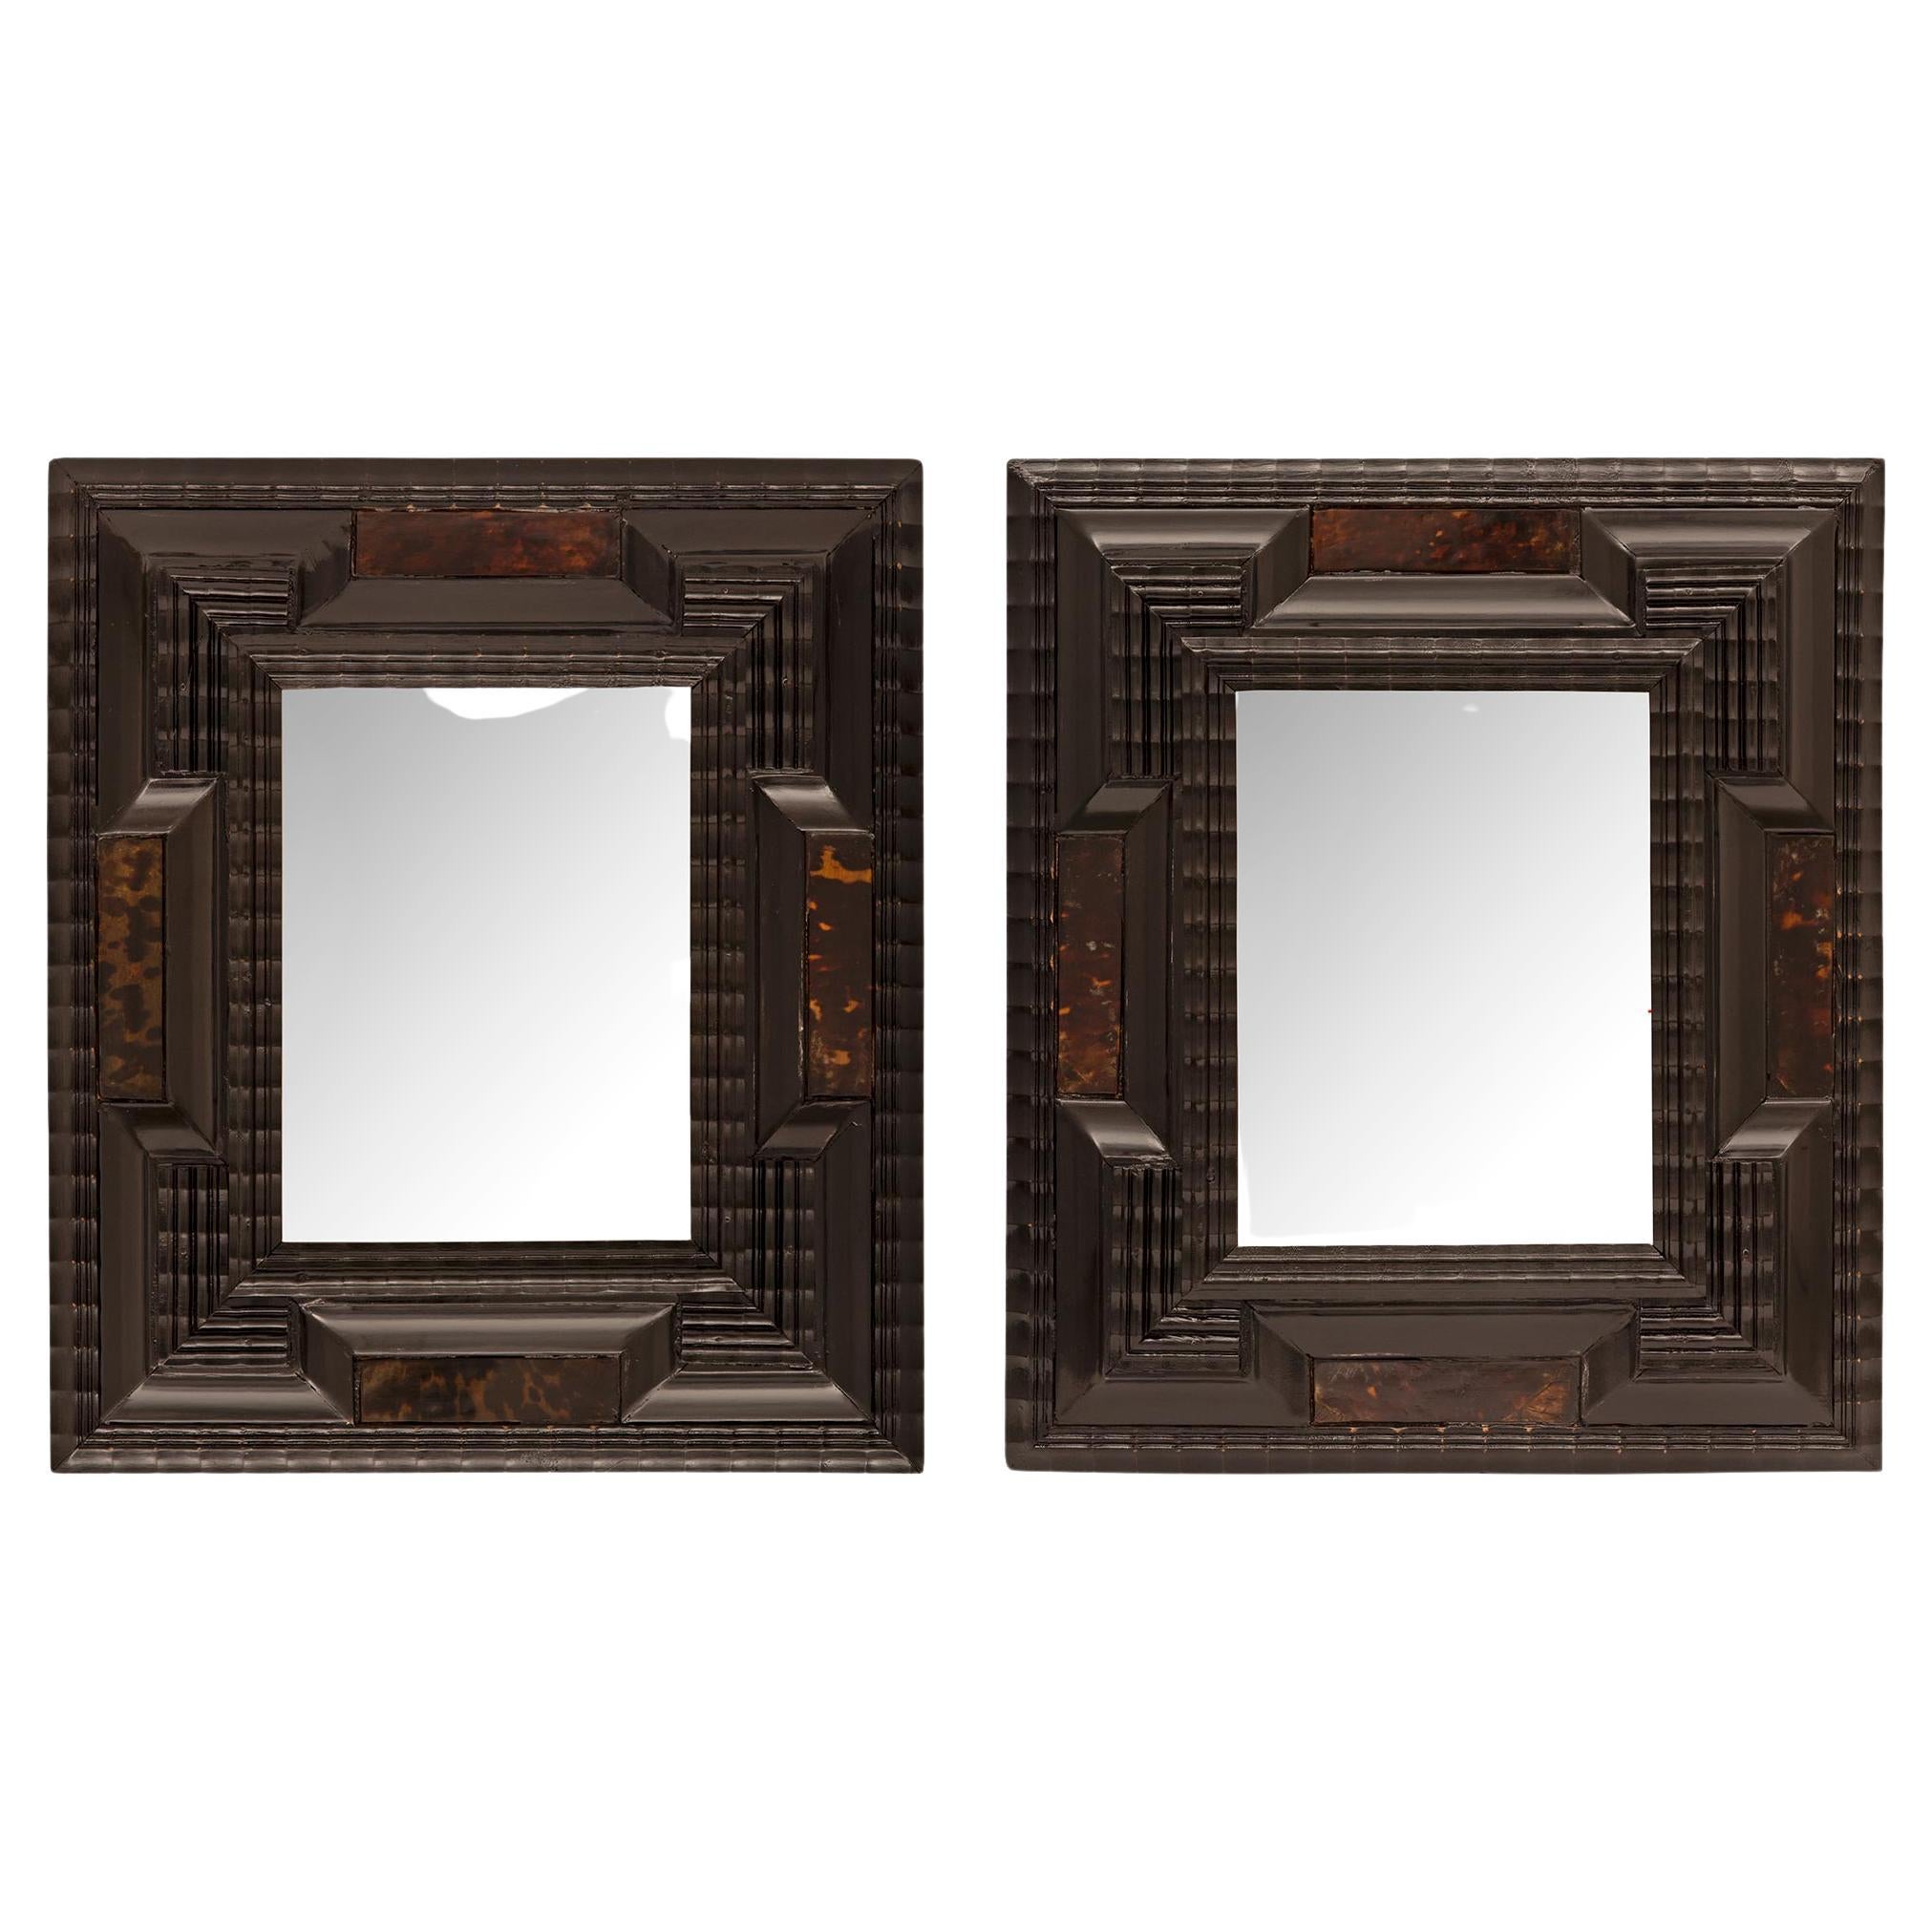 Paar italienische kleine florentinische Spiegel/Bilderrahmen in kleinem Maßstab aus dem 17. Jahrhundert